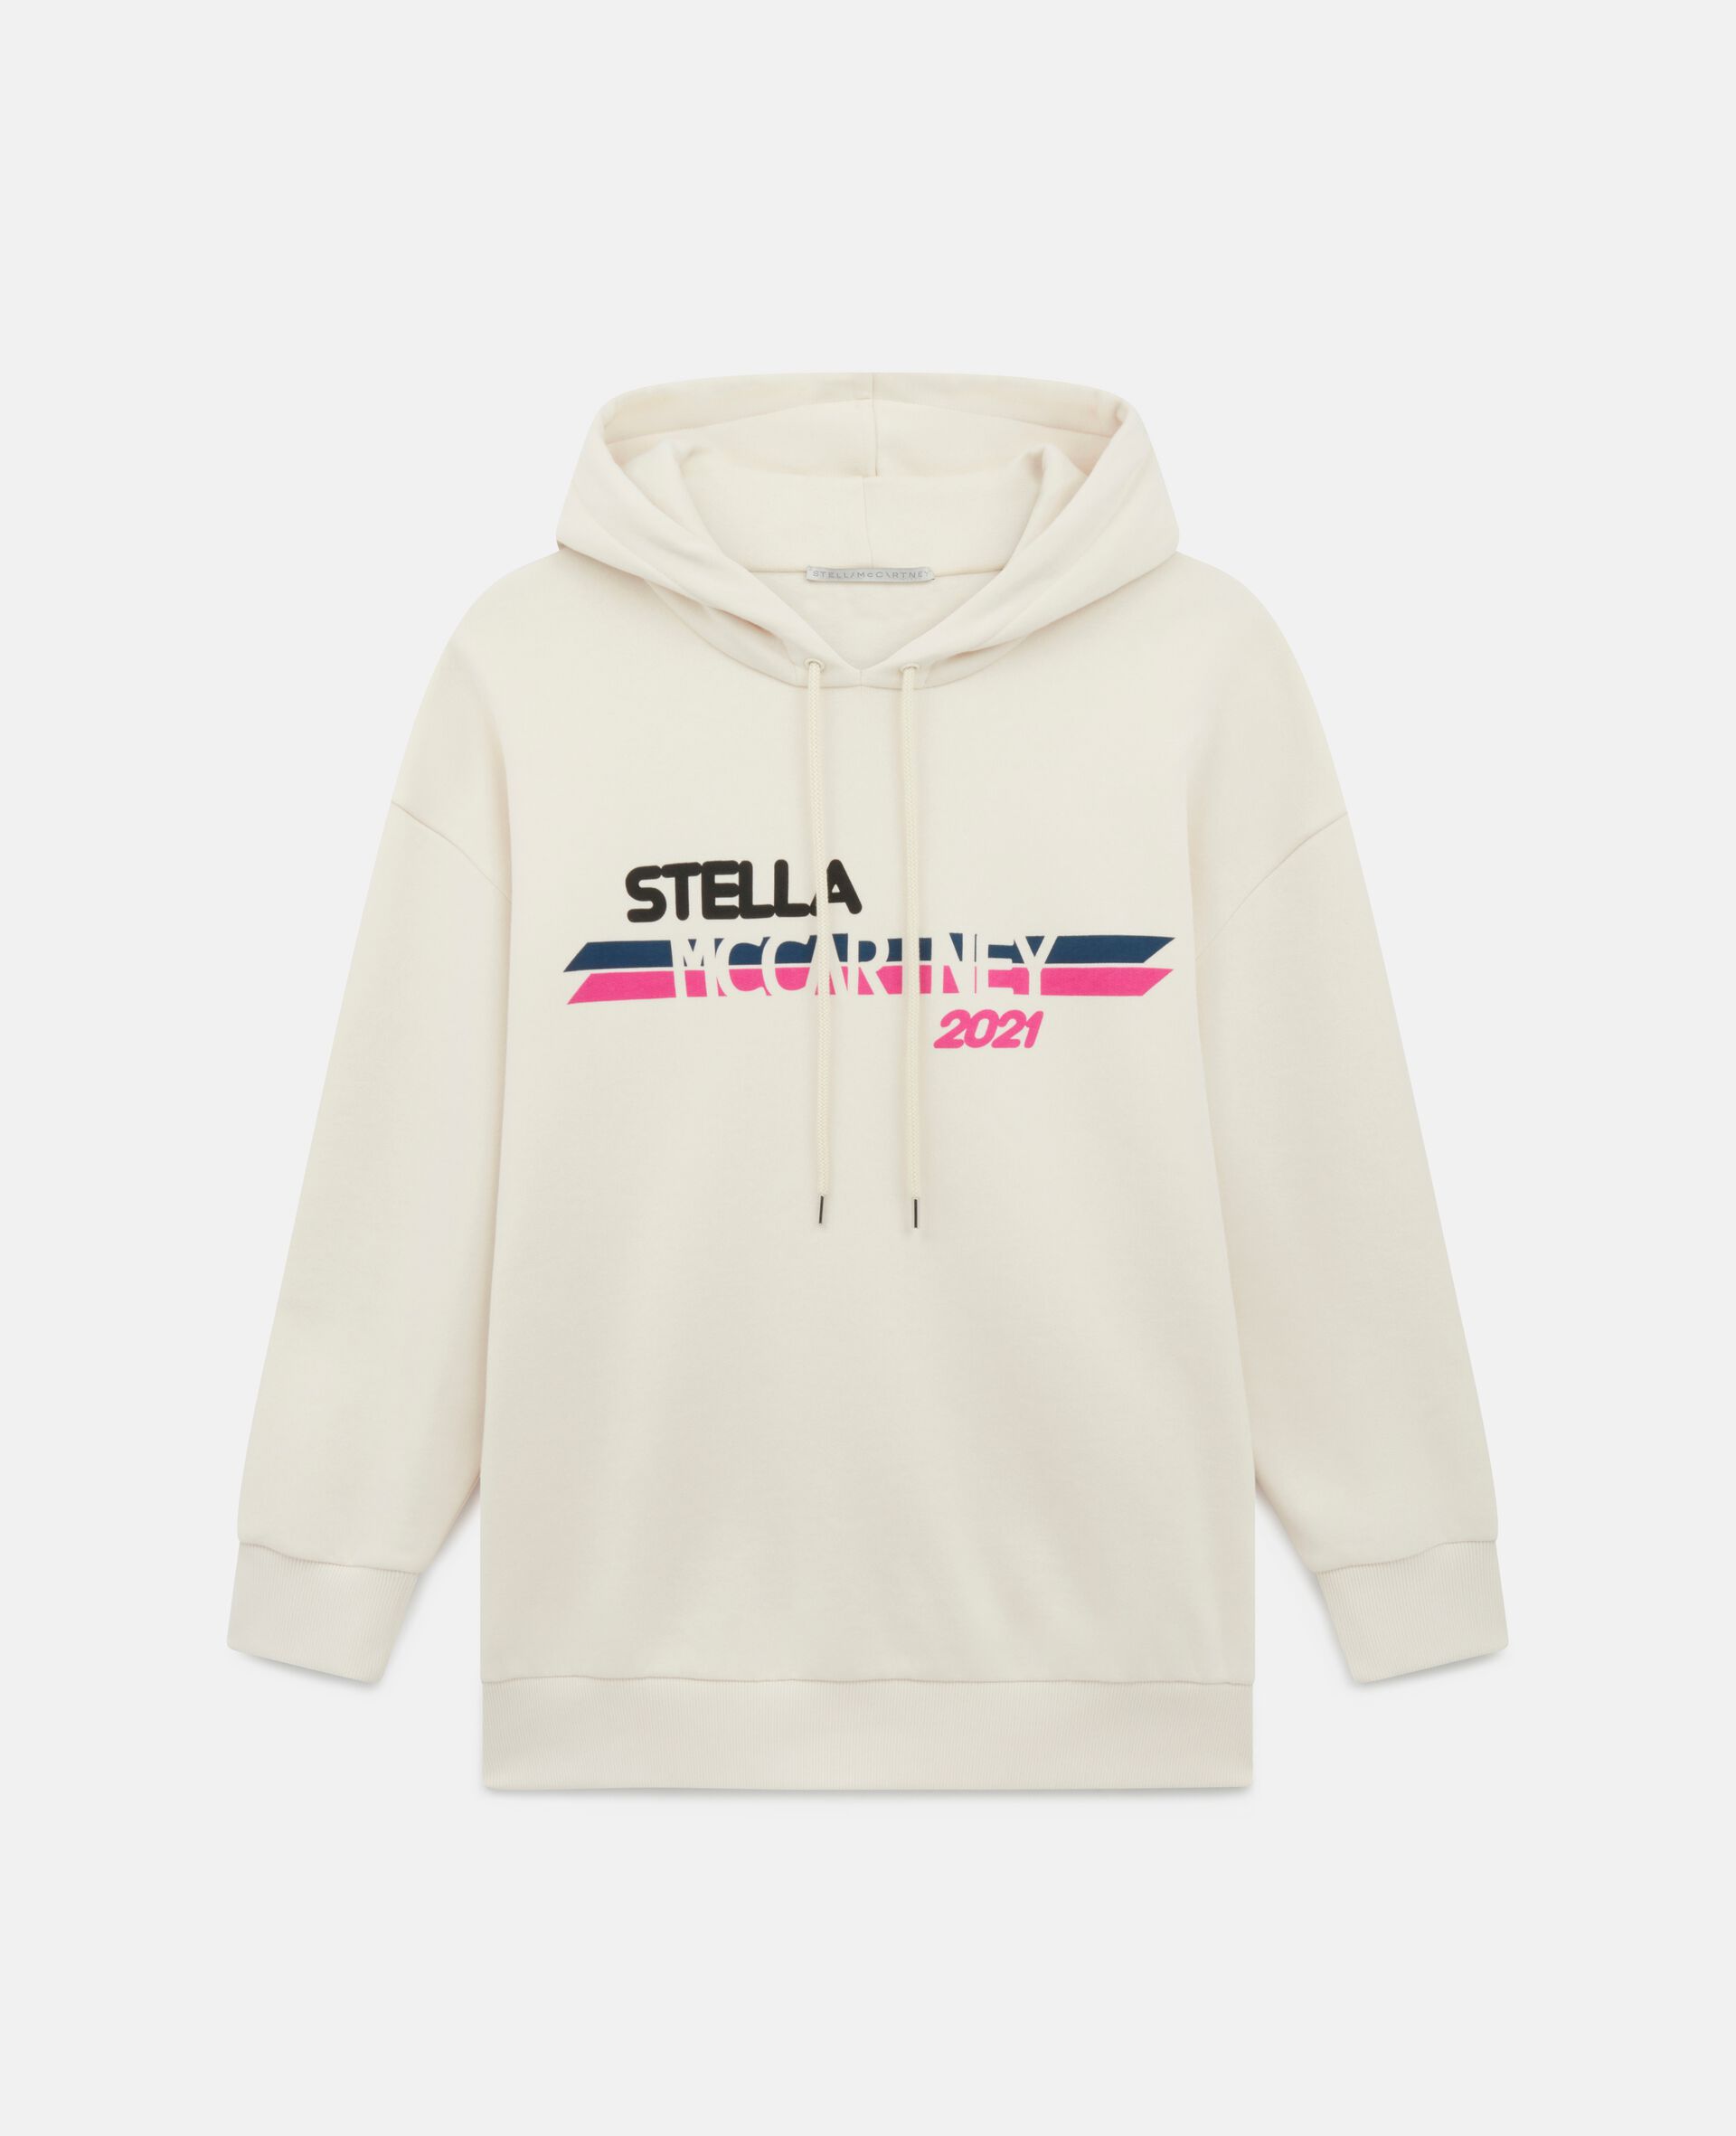 Stella McCartney 2021 Logo Hoodie-White-large image number 0